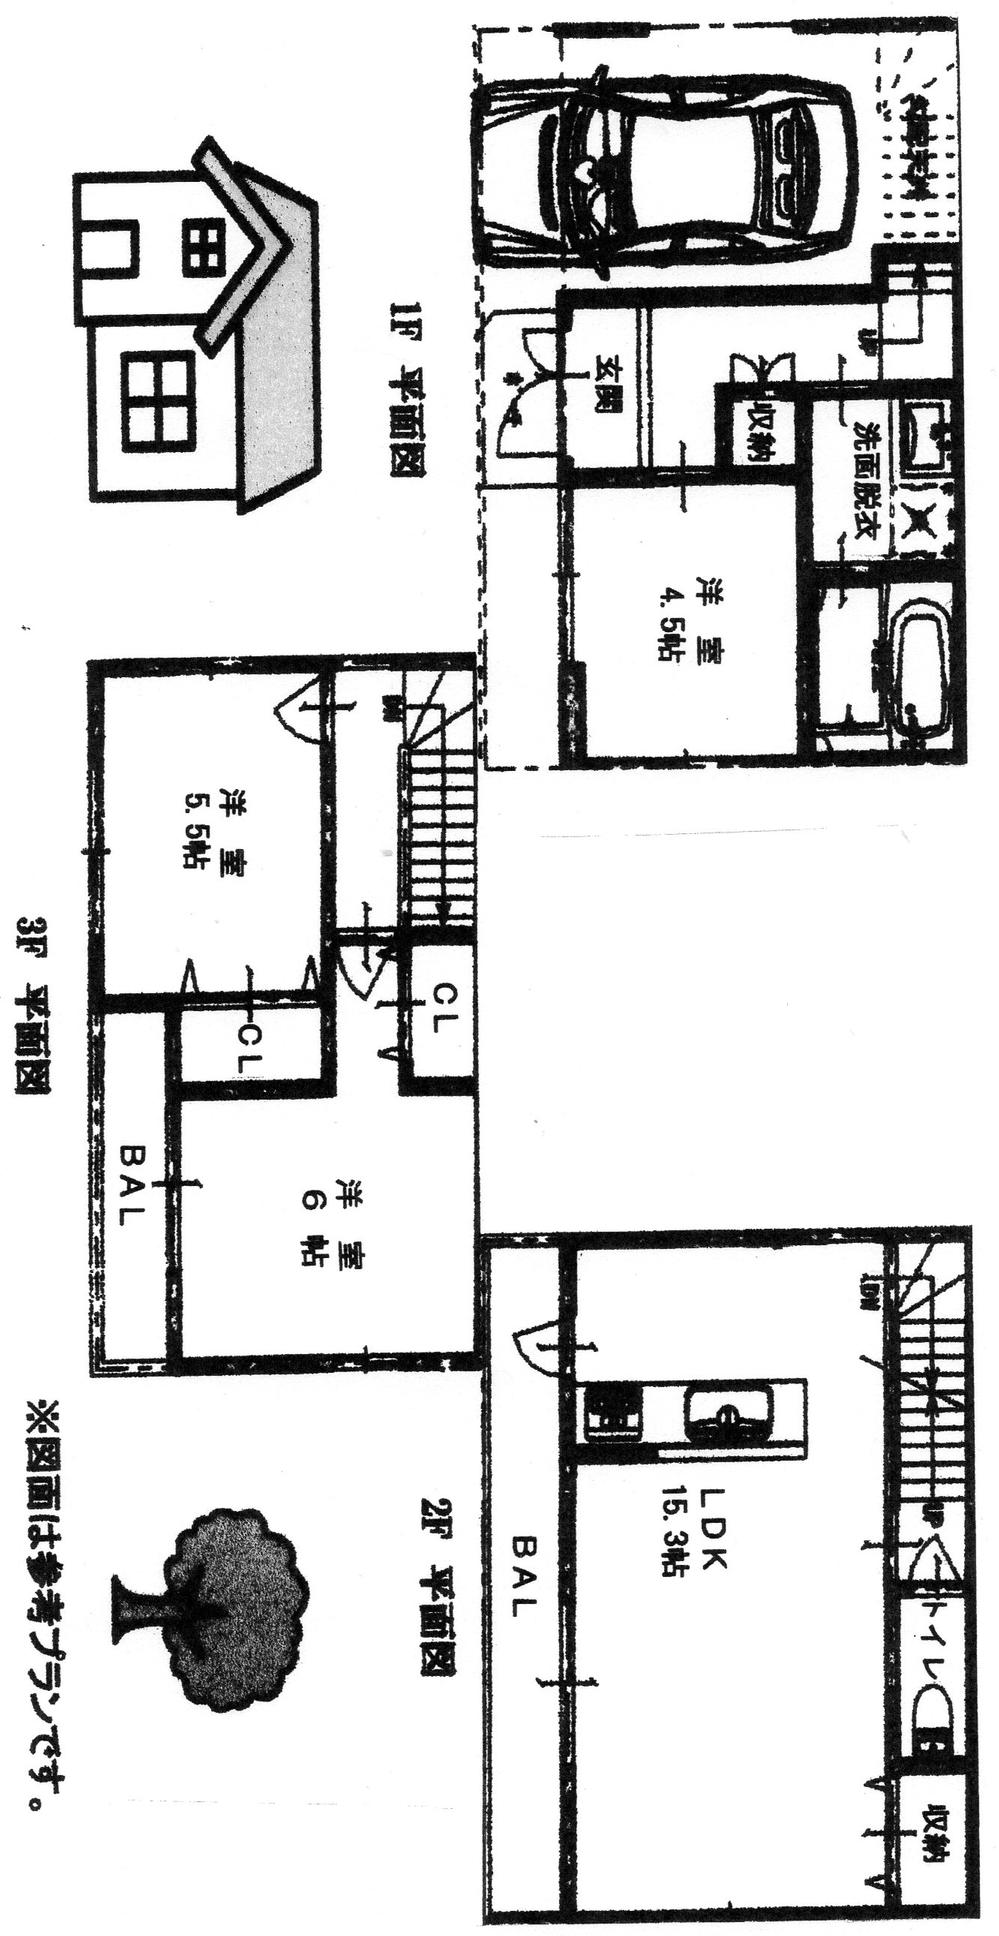 Building plan example (floor plan). Plan floor plan 3LDK, Plan building price 15 million yen, Plan building area 78.9 sq m